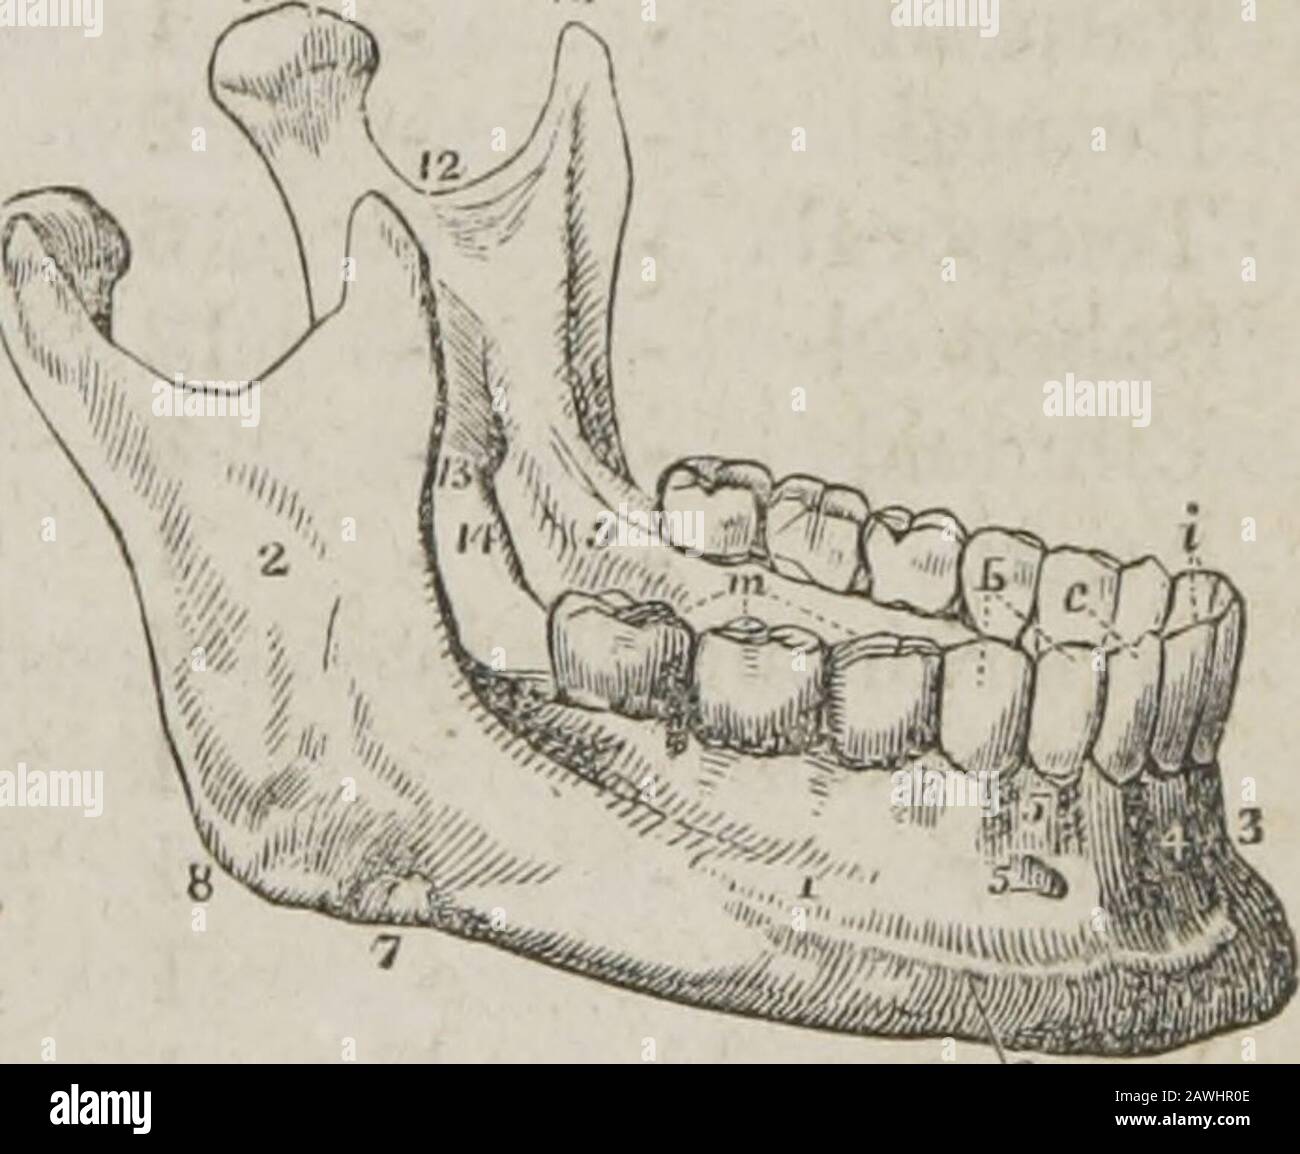 Un système d'anatomie humaine, général et spécial . d le muscle pterygoide externe. L'encoche SIG-moid est traversée par l'artère et le nerf massettériques. La surface interne du ramus est marquée près de son centre par des foramen oblique d'alarge, le dentaire inférieur, pour l'entrée de l'artère dentaire interne et du nerf dans le canal dentaire. L'ouverture du cadre est une marge vive, à laquelle est fixée la mâchoire inférieure latérale interne *. 1. Le corps. 2. Le ramus. 3. La symphyse. 4. Le fossafor le dépresseur labii inferioris muscle. 5. Le foramen mental. 6. La crête externe de l'ob-lique. 7. Le gr Banque D'Images